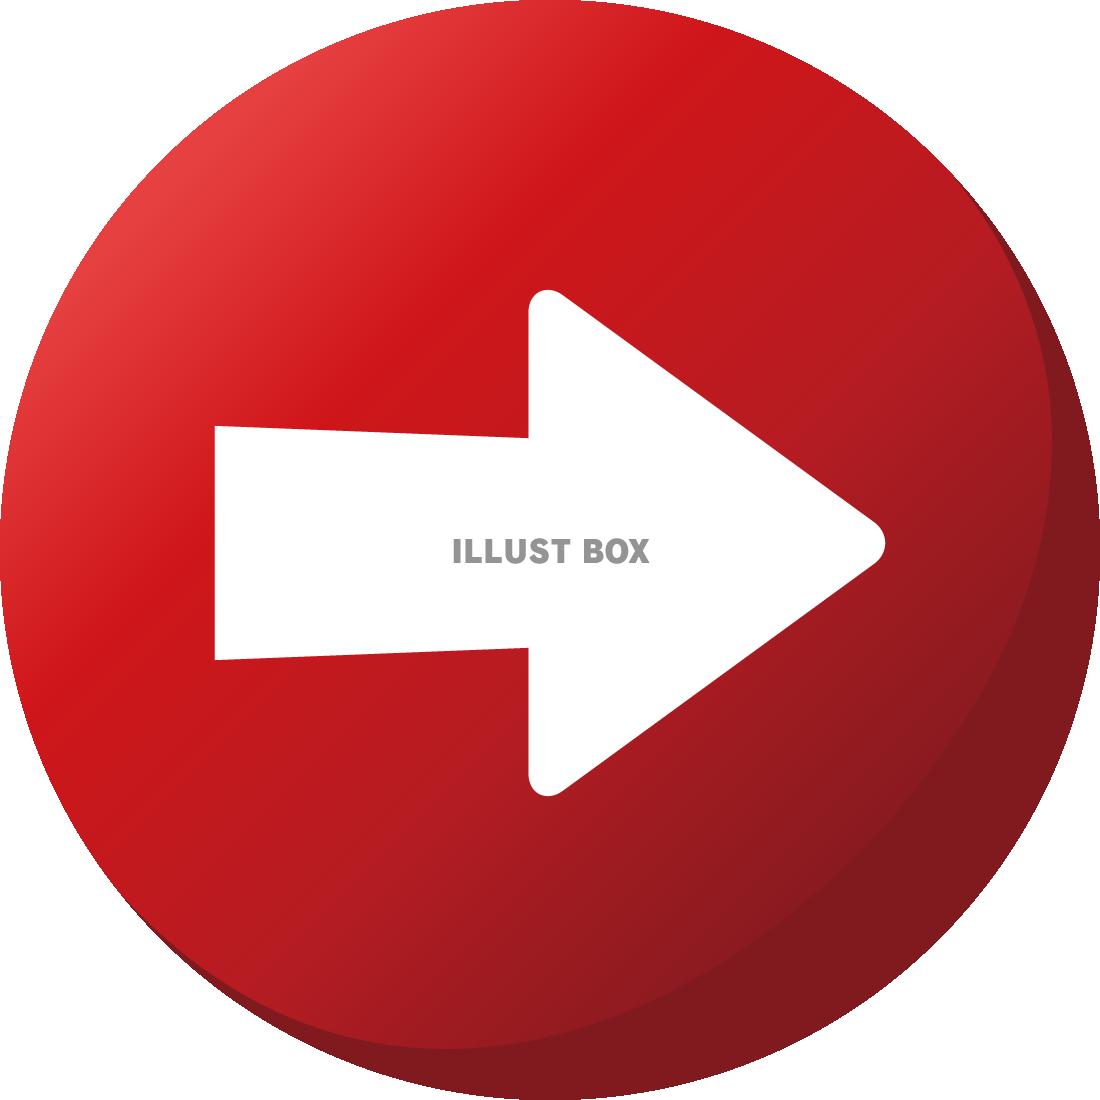 かわいいゲーム風 矢印の丸ボタン 赤 イラストフリー素材